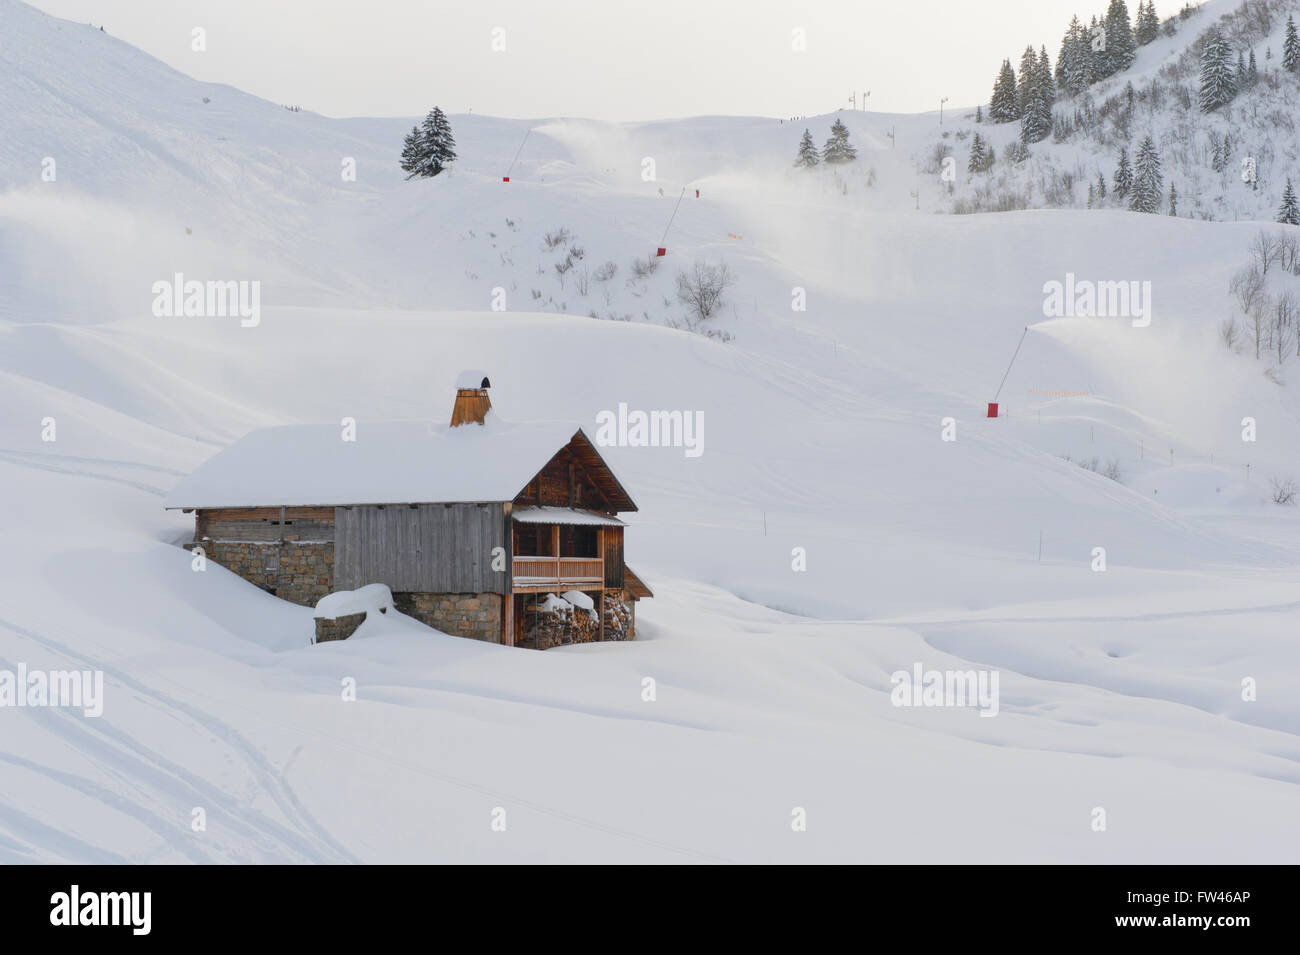 Maison de ferme traditionnel alpin, à côté de pistes de ski, le Chinaillon, Le Grand Bornand, Le Lac d'Annecy les stations de ski, France Banque D'Images